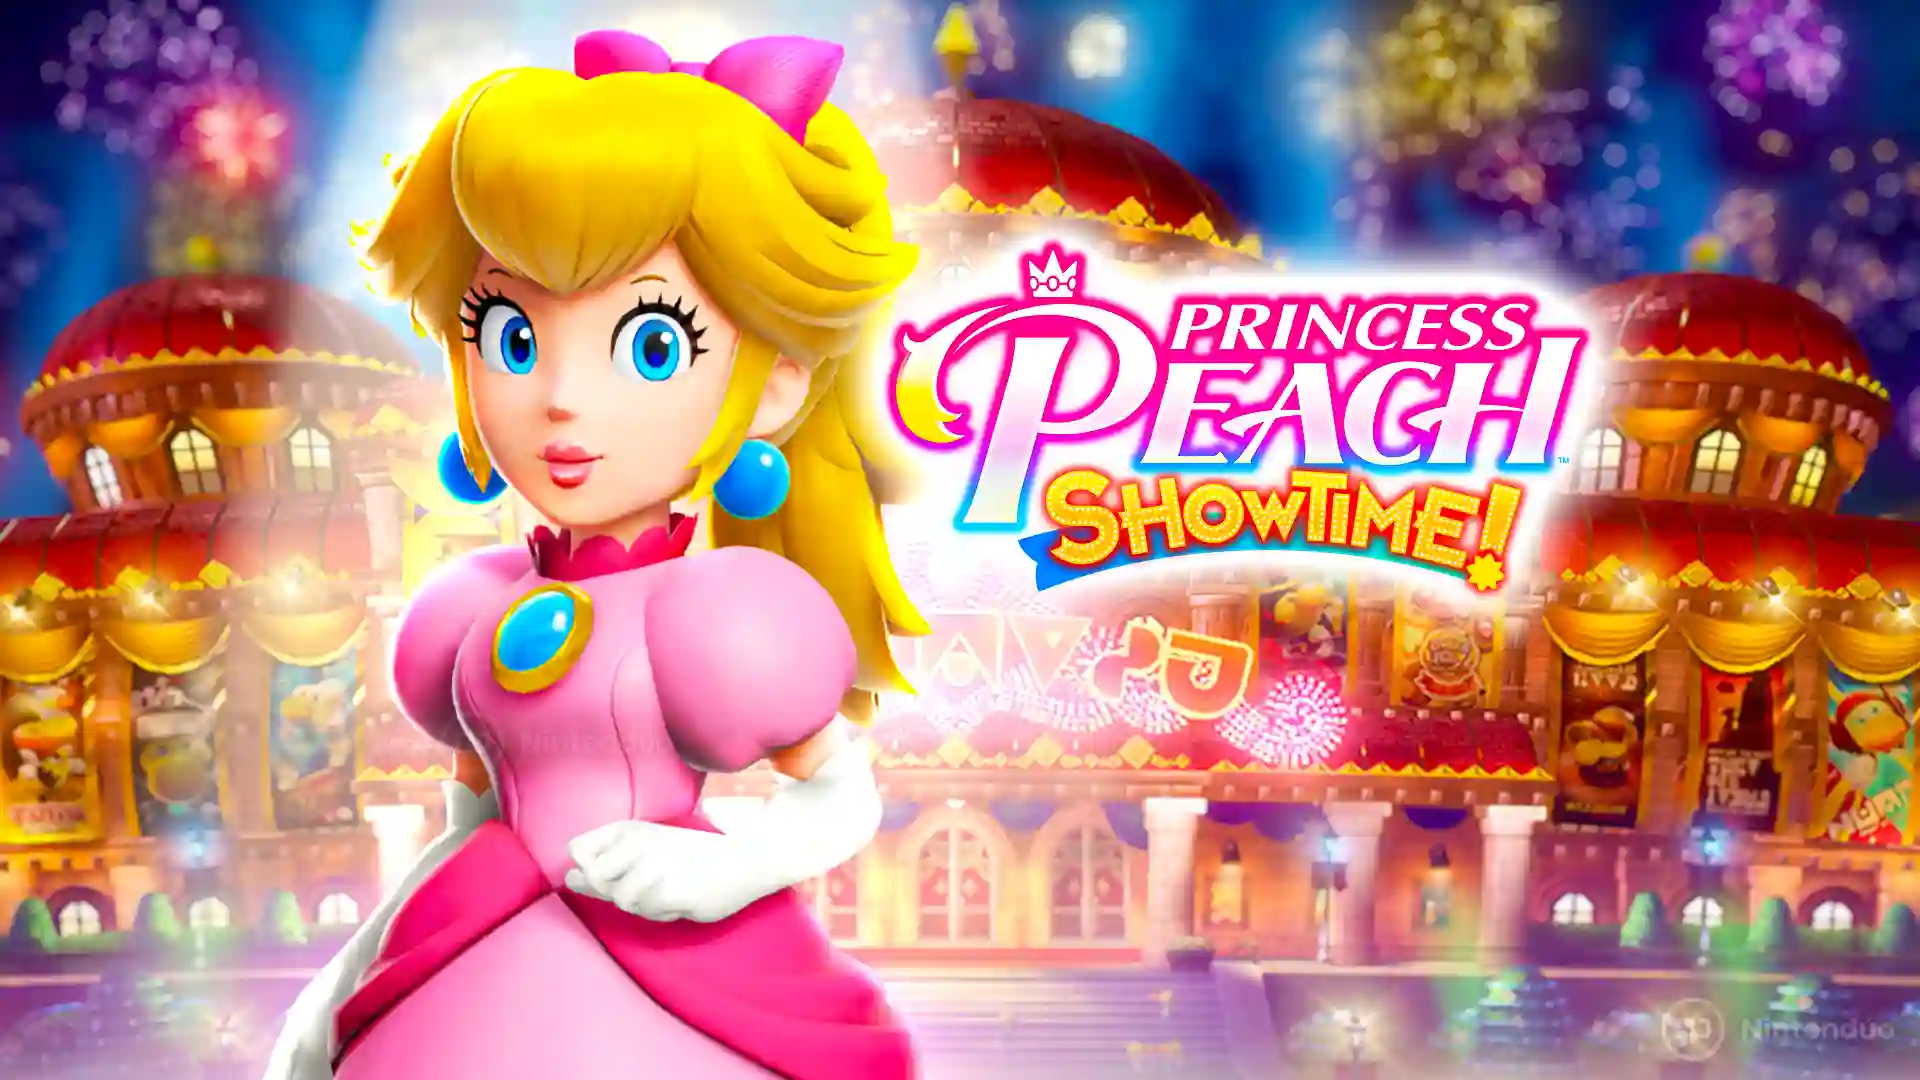 Juega gratis antes del lanzamiento a Princess Peach con su nueva demo